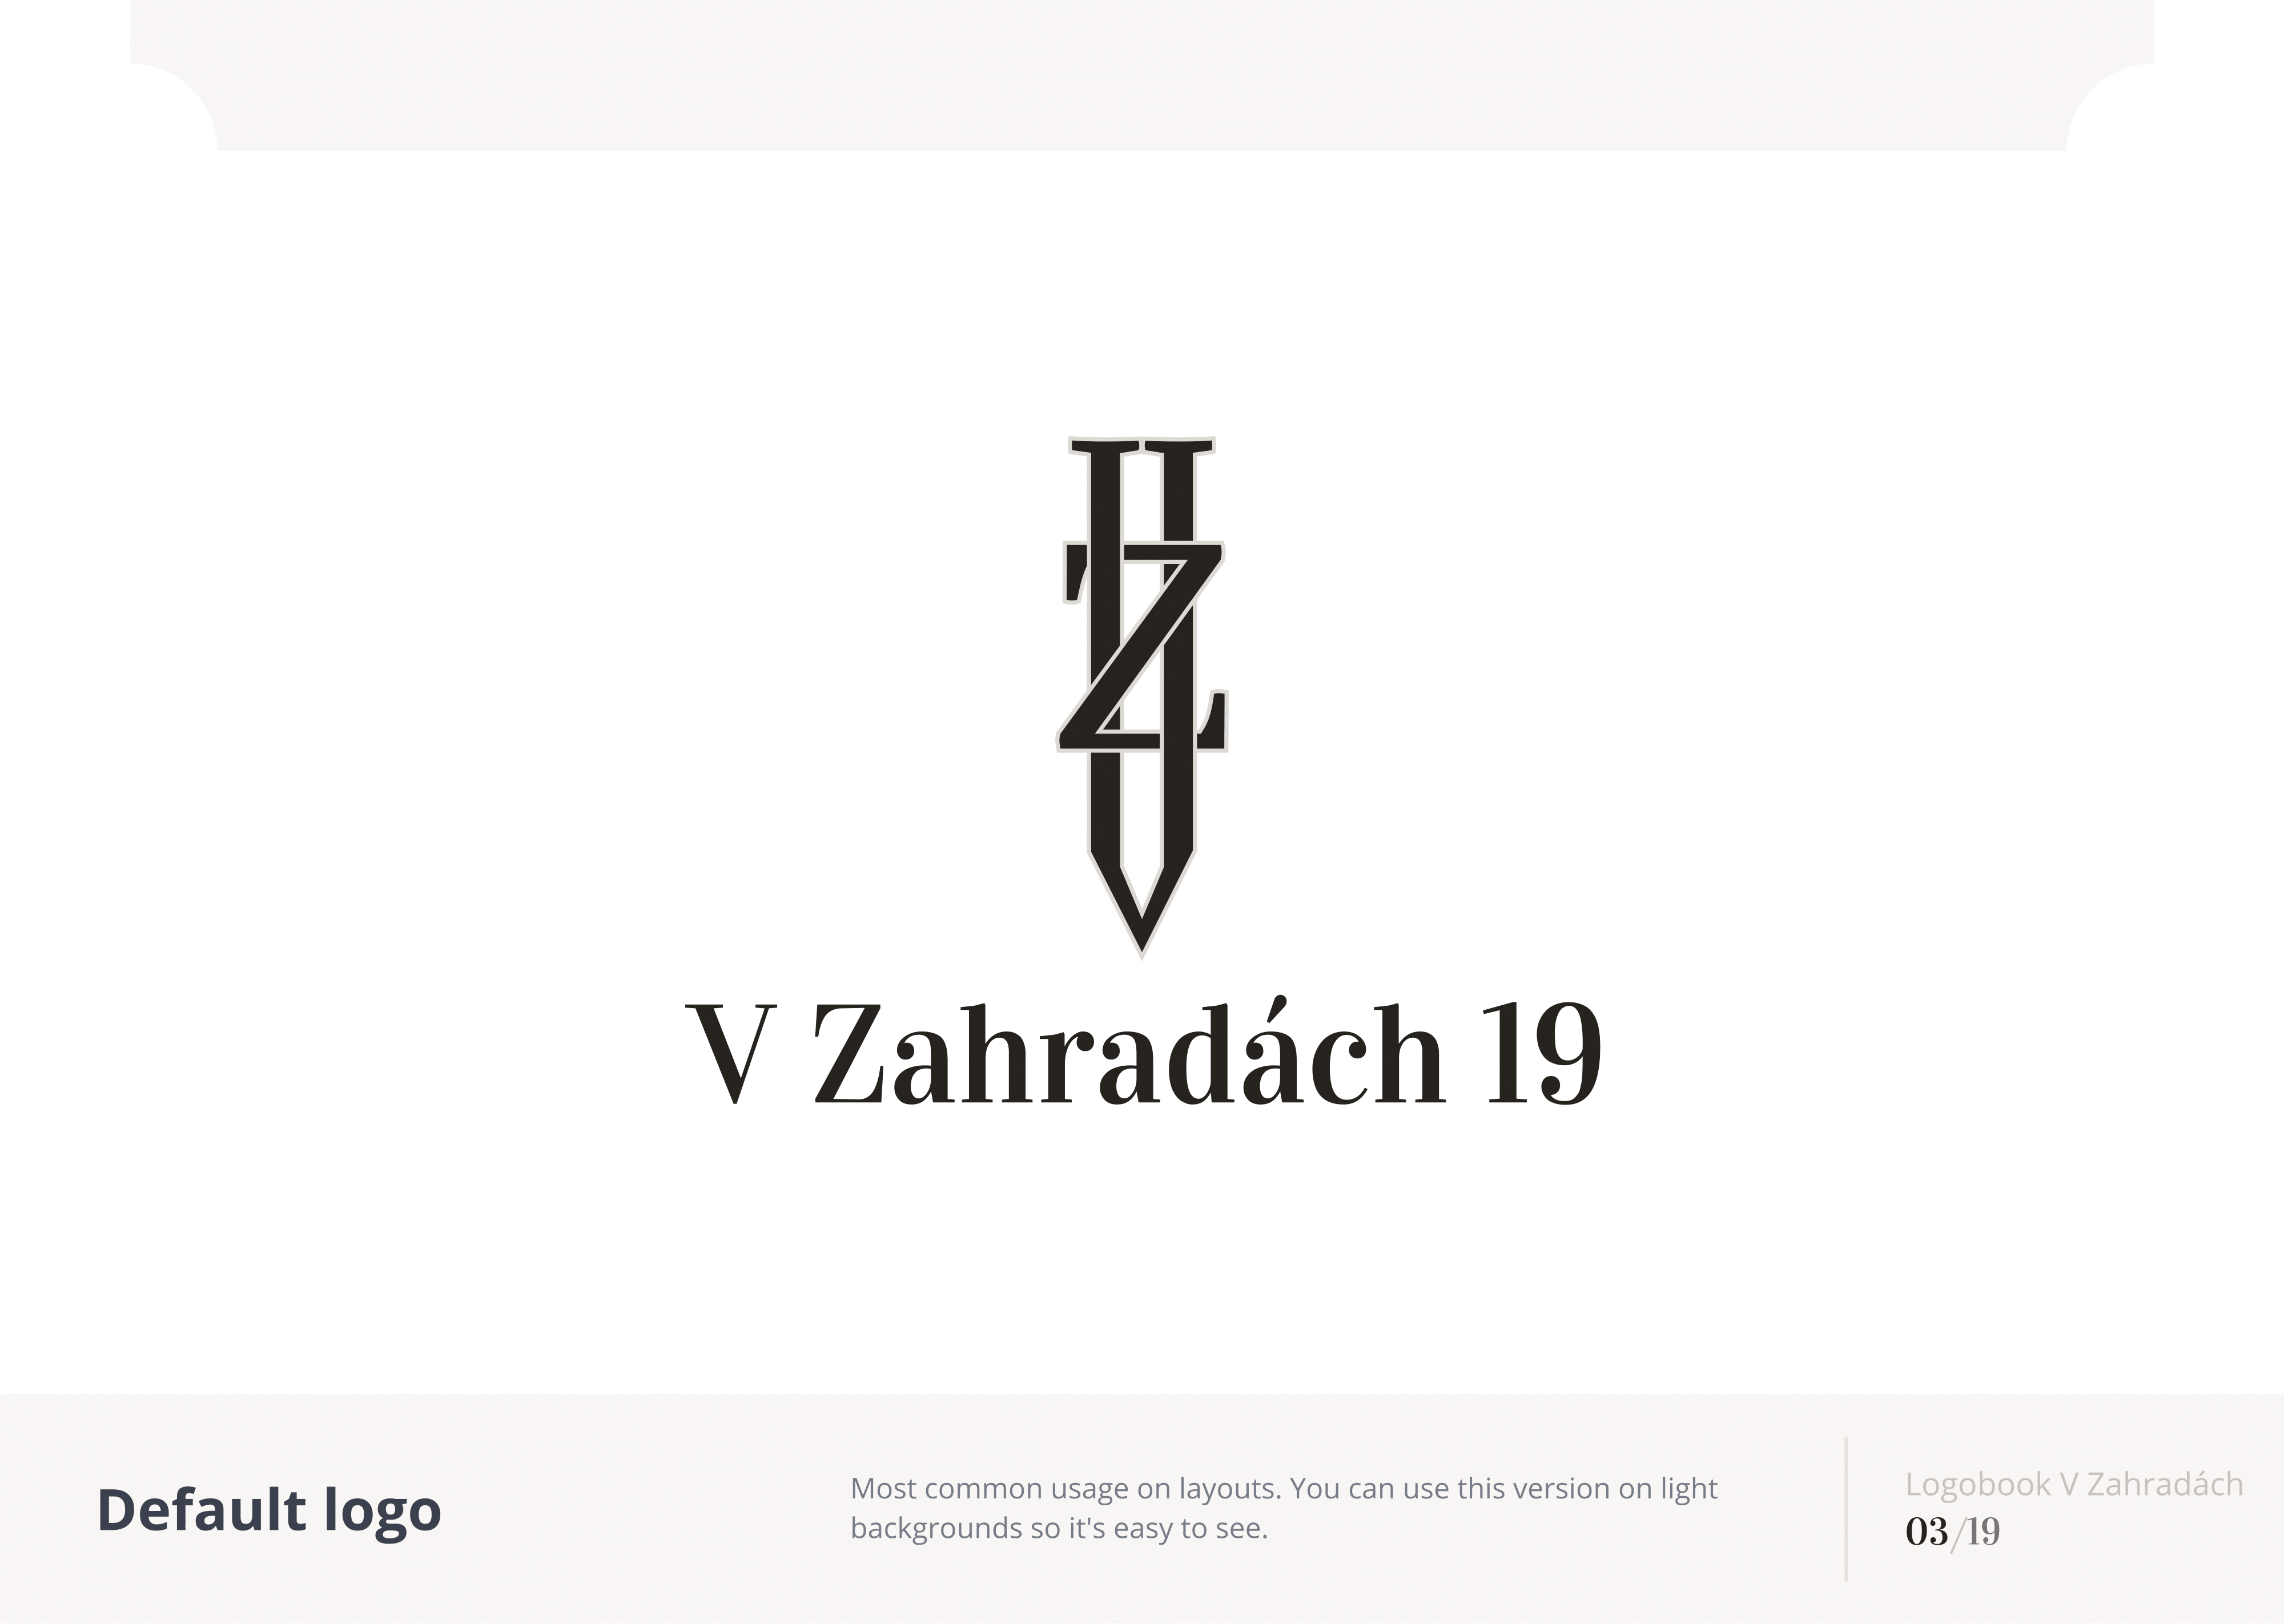 V_Zahradach_19_(Logobook)_2021-03